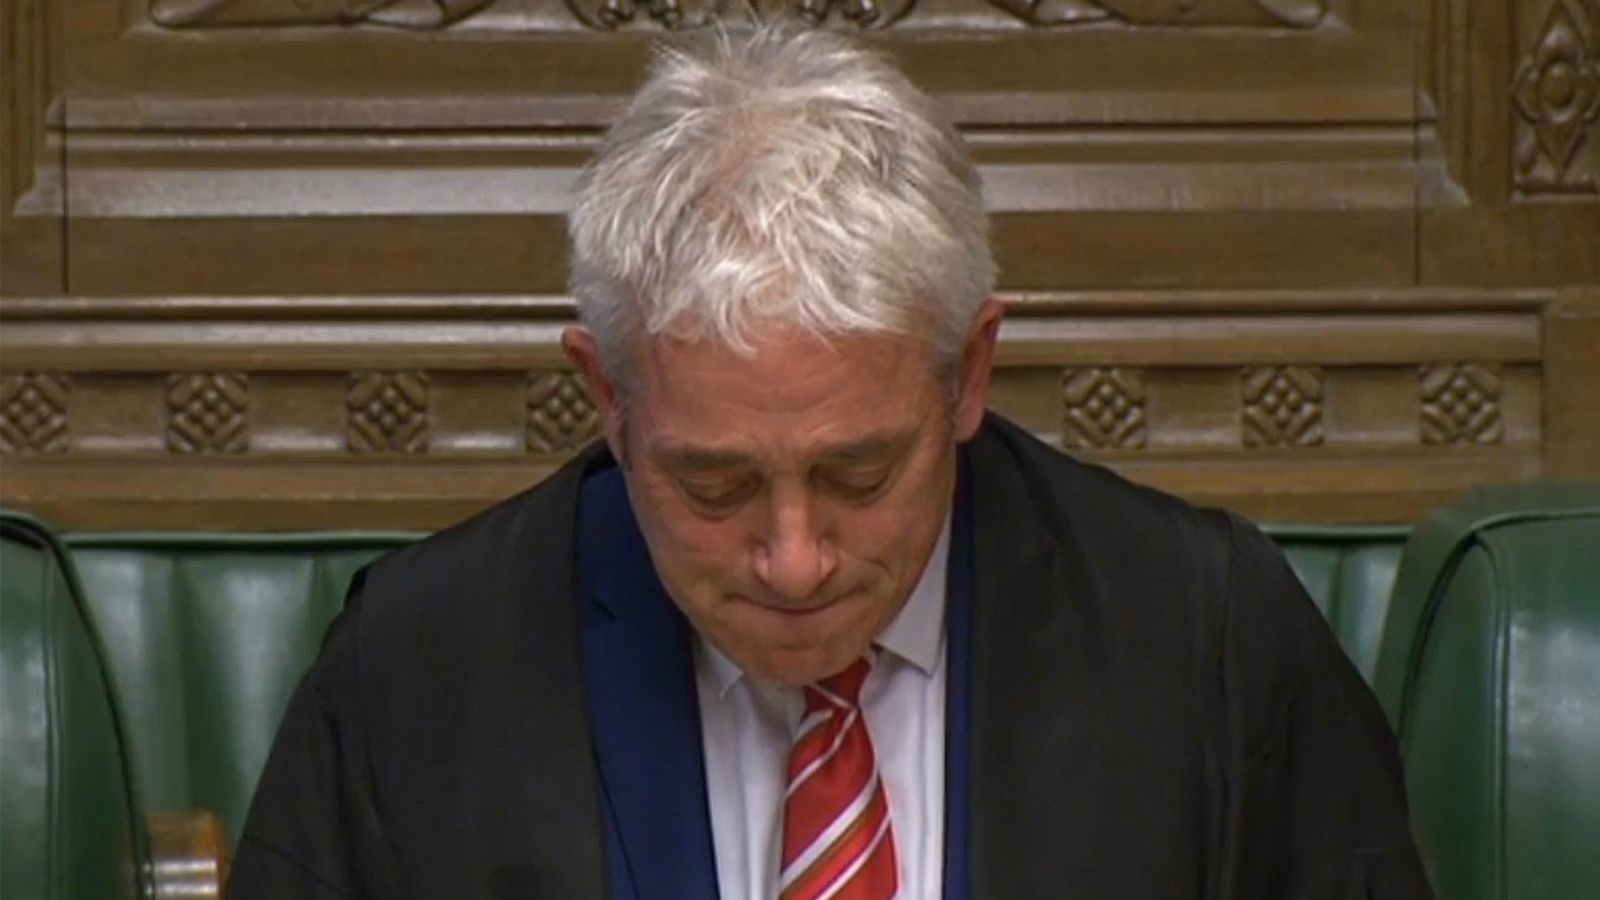 Adiós a Bercow, el 'speaker' más colorido del Parlamento británico